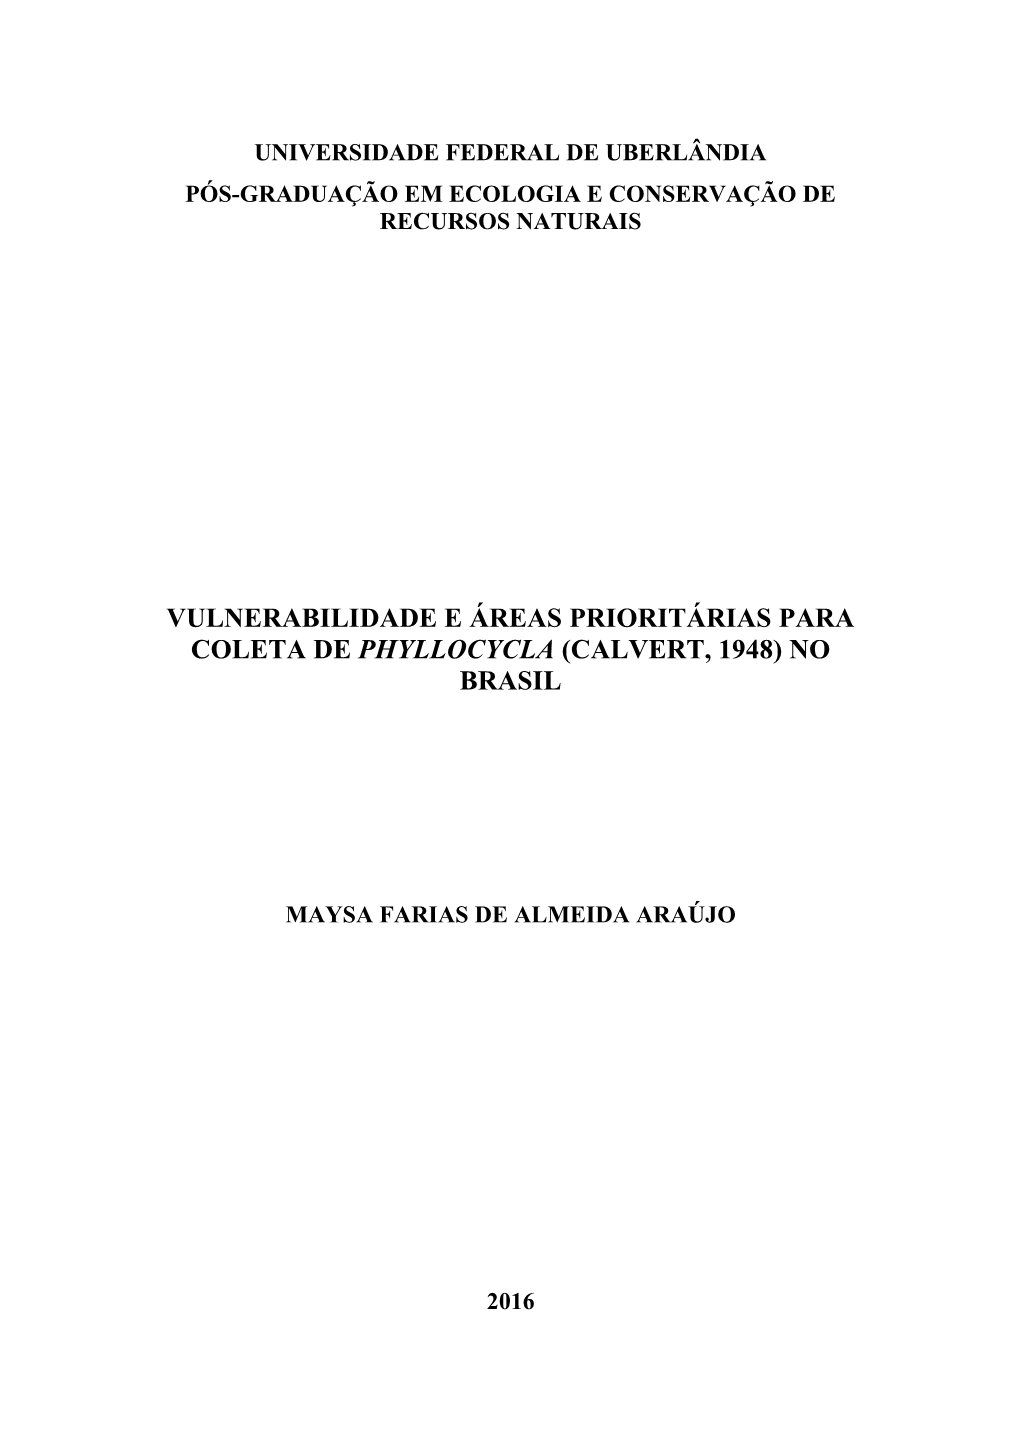 Vulnerabilidade E Áreas Prioritárias Para Coleta De Phyllocycla (Calvert, 1948) No Brasil